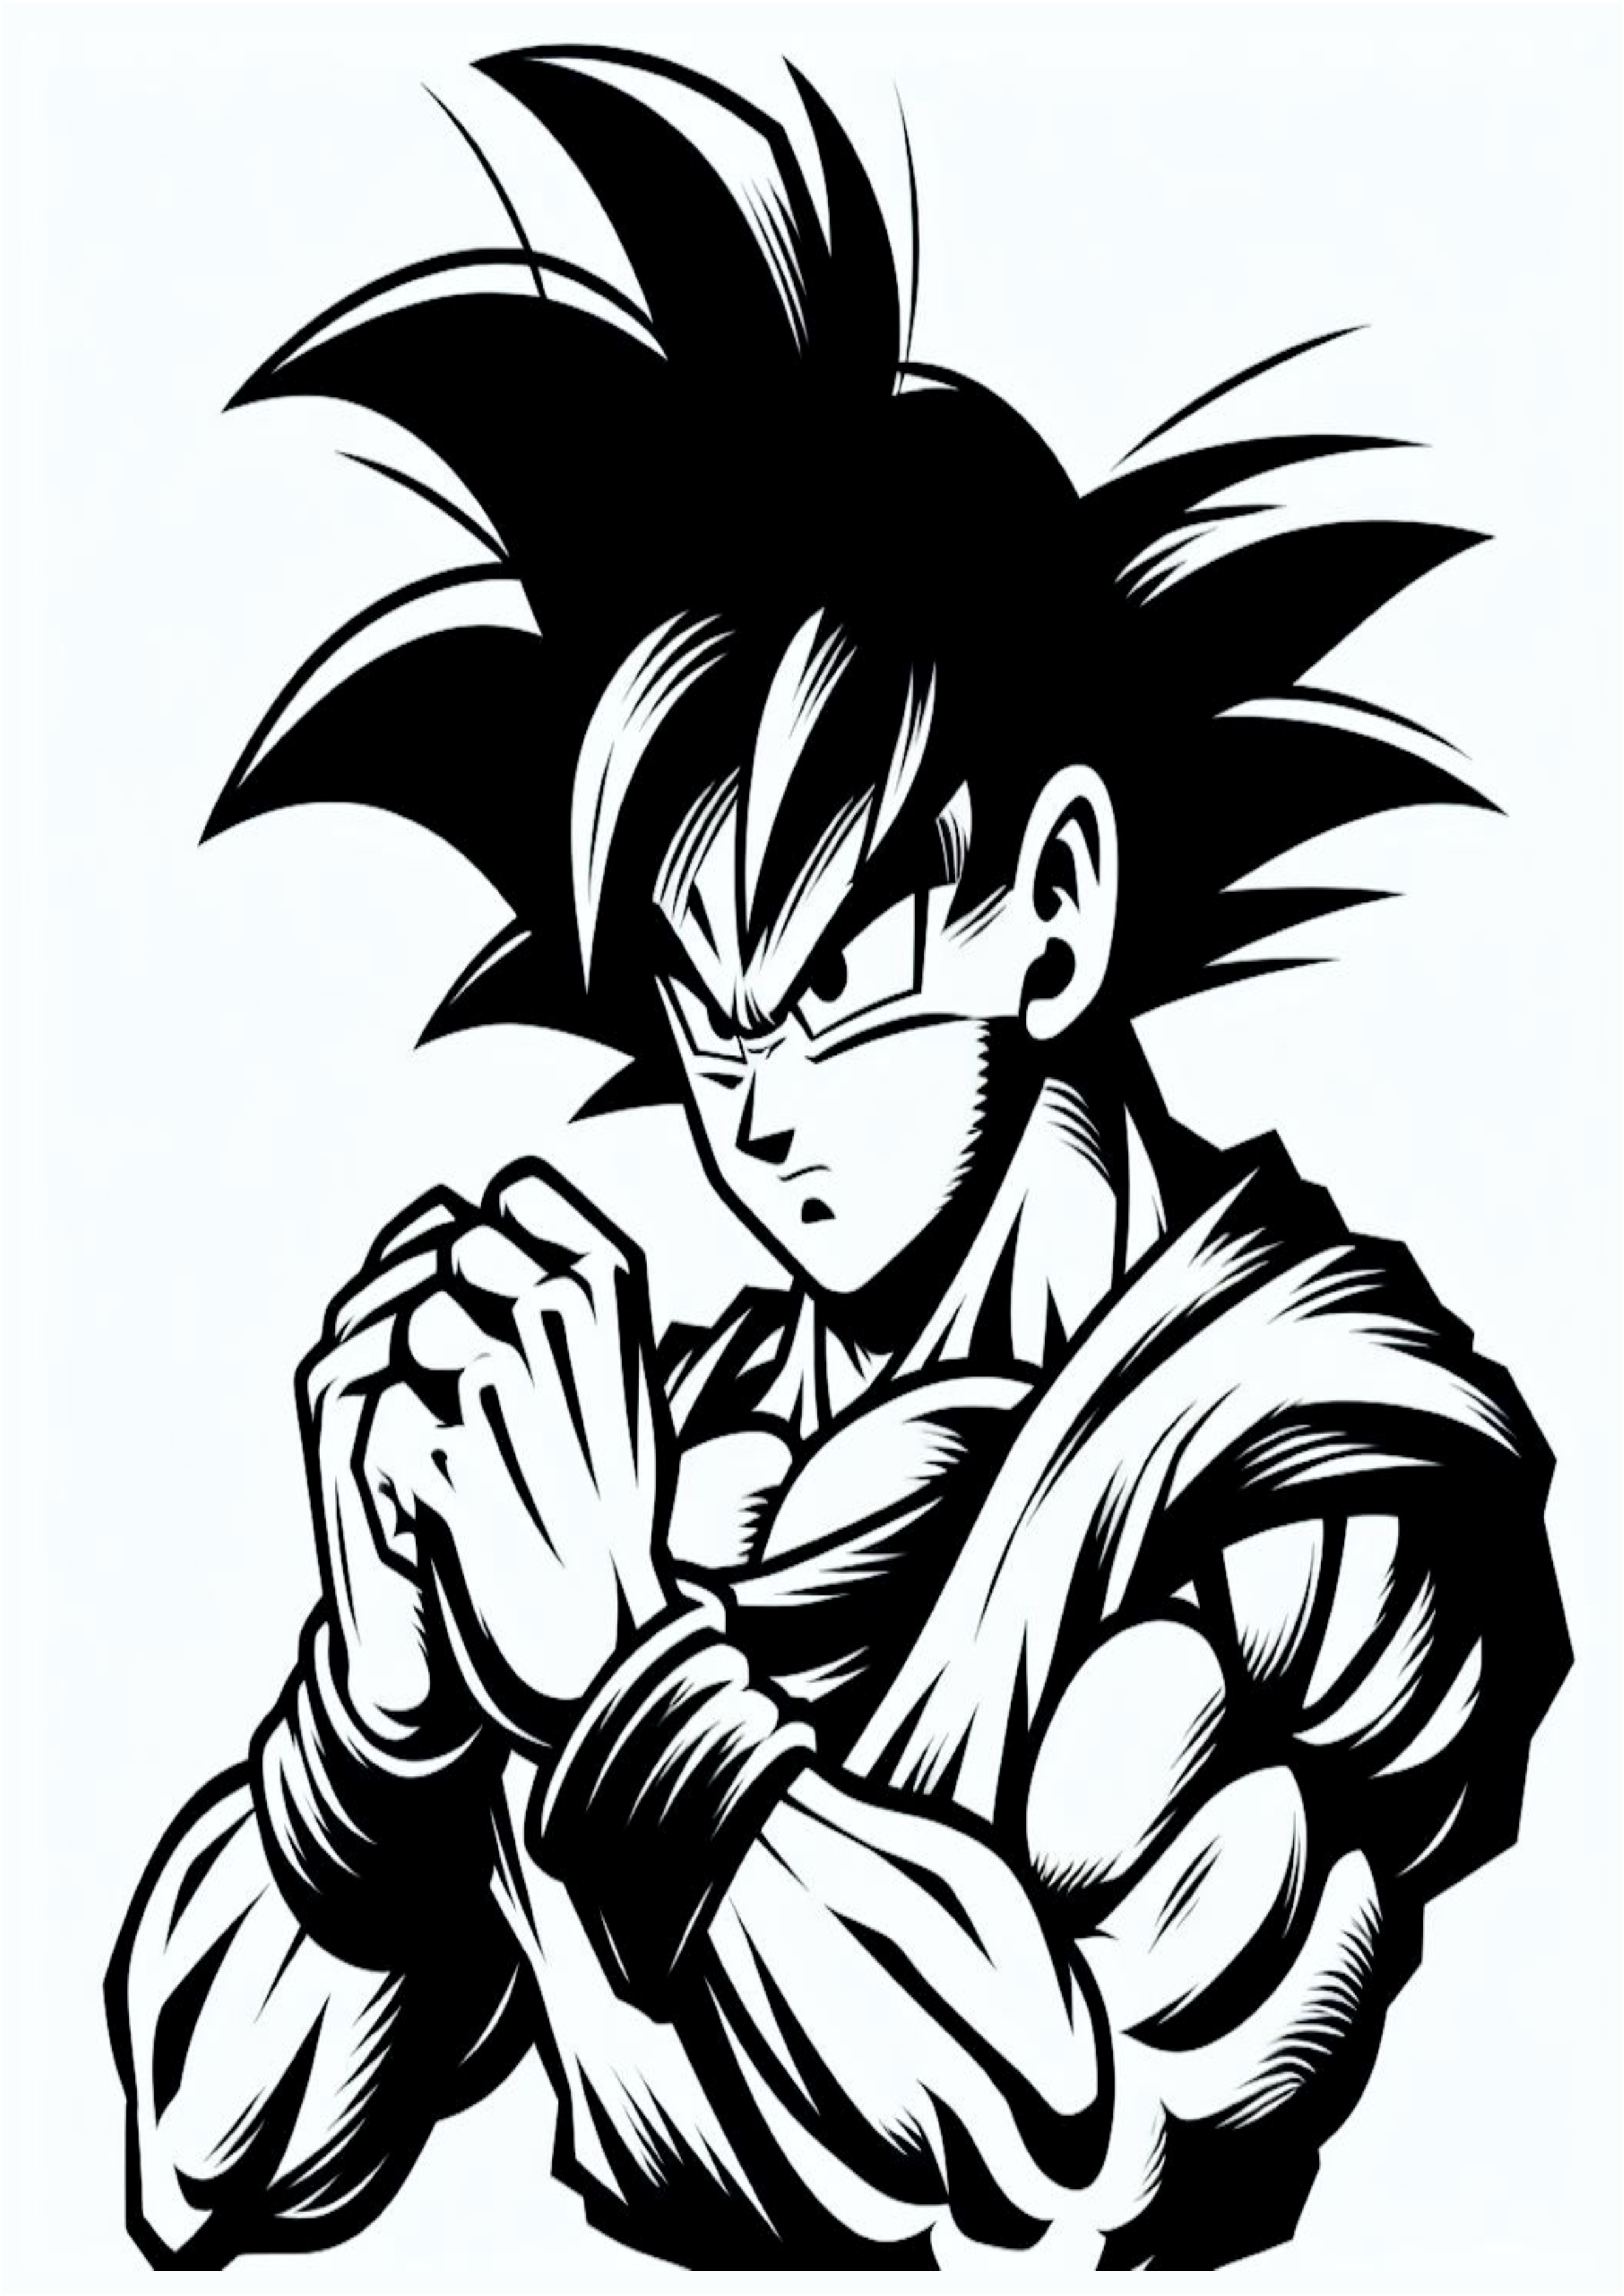 Dragon ball z ideias para tatuagem lutando guerreiro desenho simples Goku sério anime japonês png